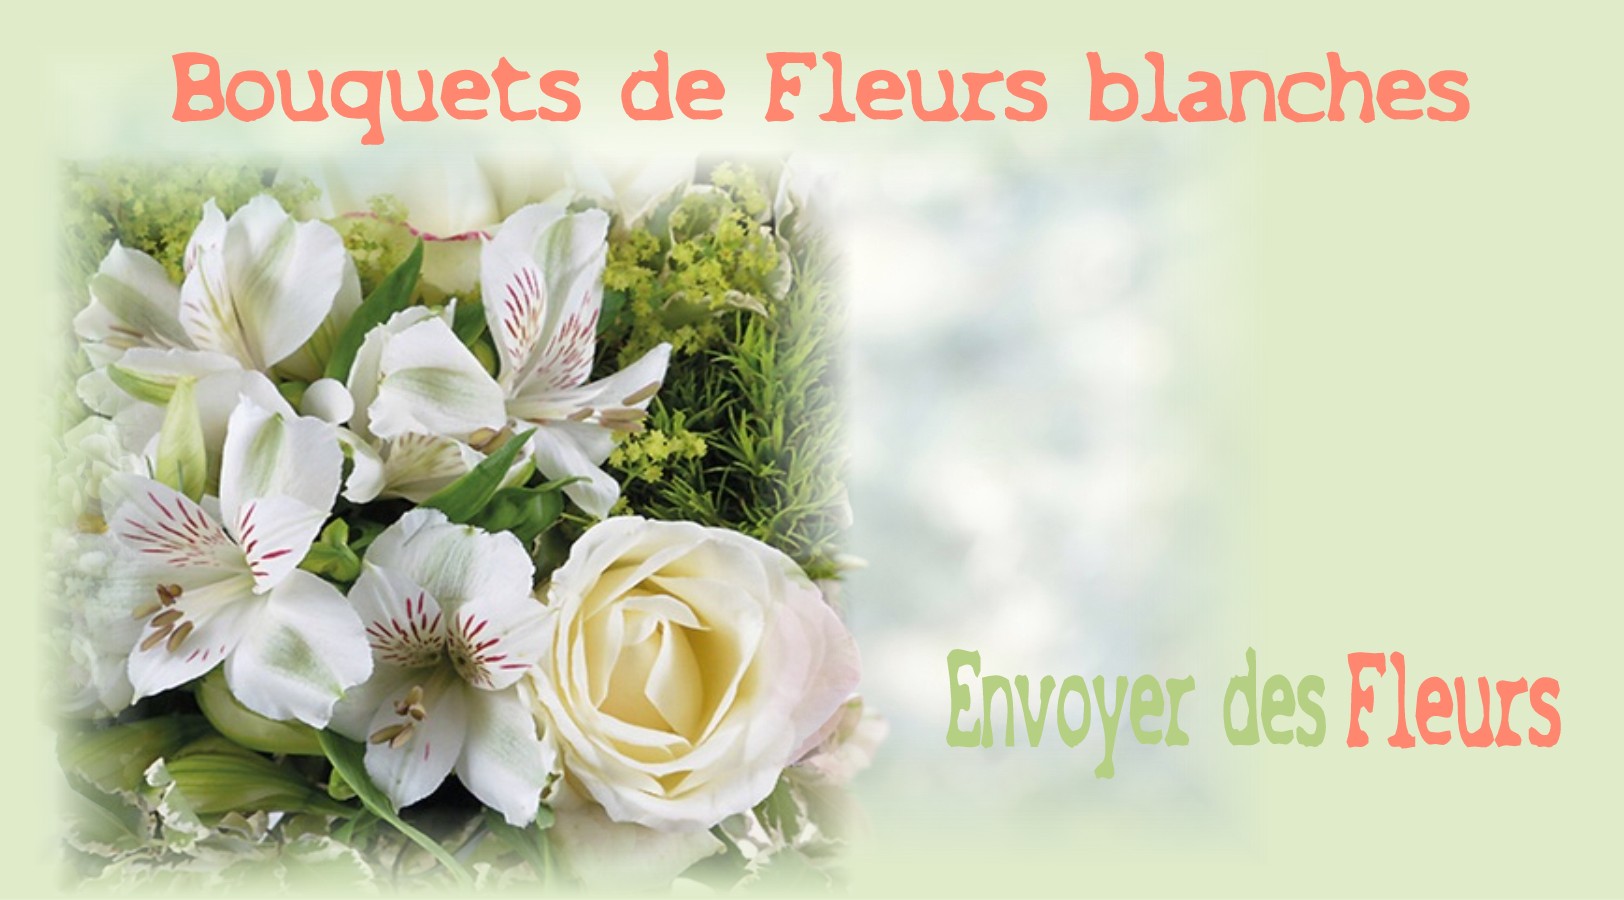 BOUQUETS DE FLEURS BLANCHES -FLEURISTE de l'AVEYRON - ENVOYER DES FLEURS